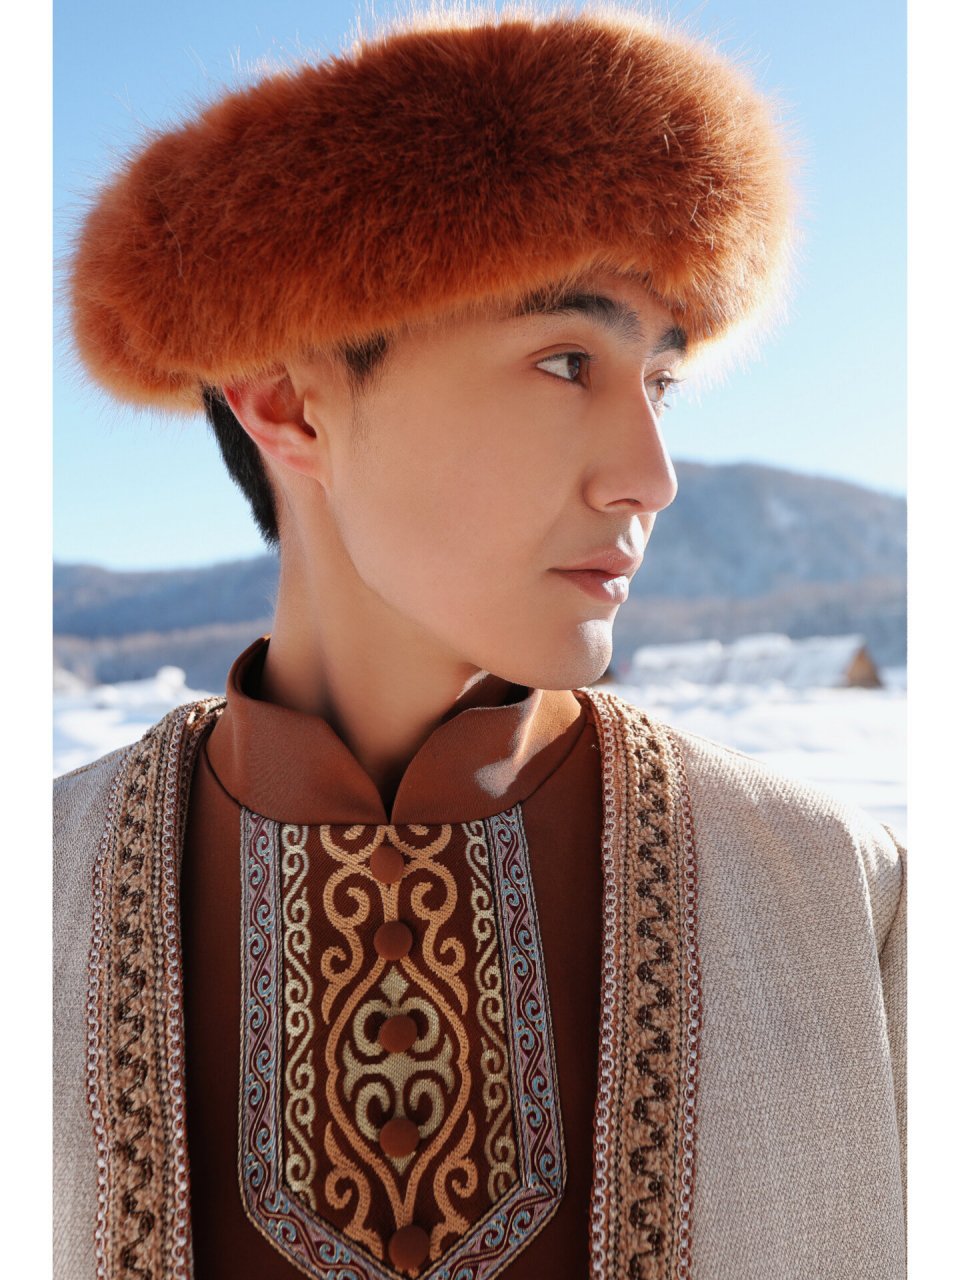 哈萨克族男子服饰图片